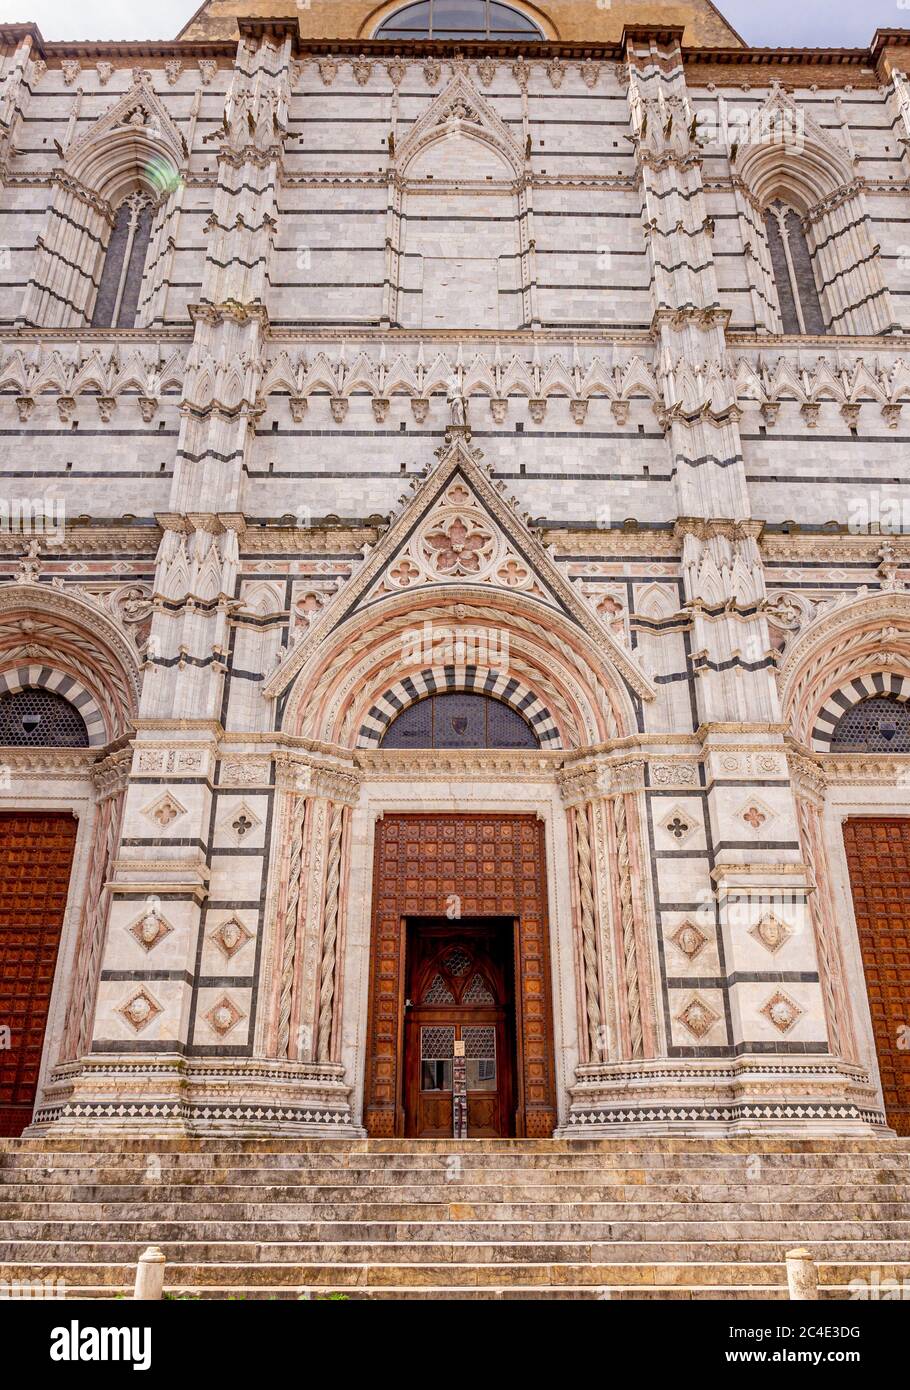 Vue extérieure du Baptistère de la cathédrale de Sienne. Sienne. Italie. Banque D'Images